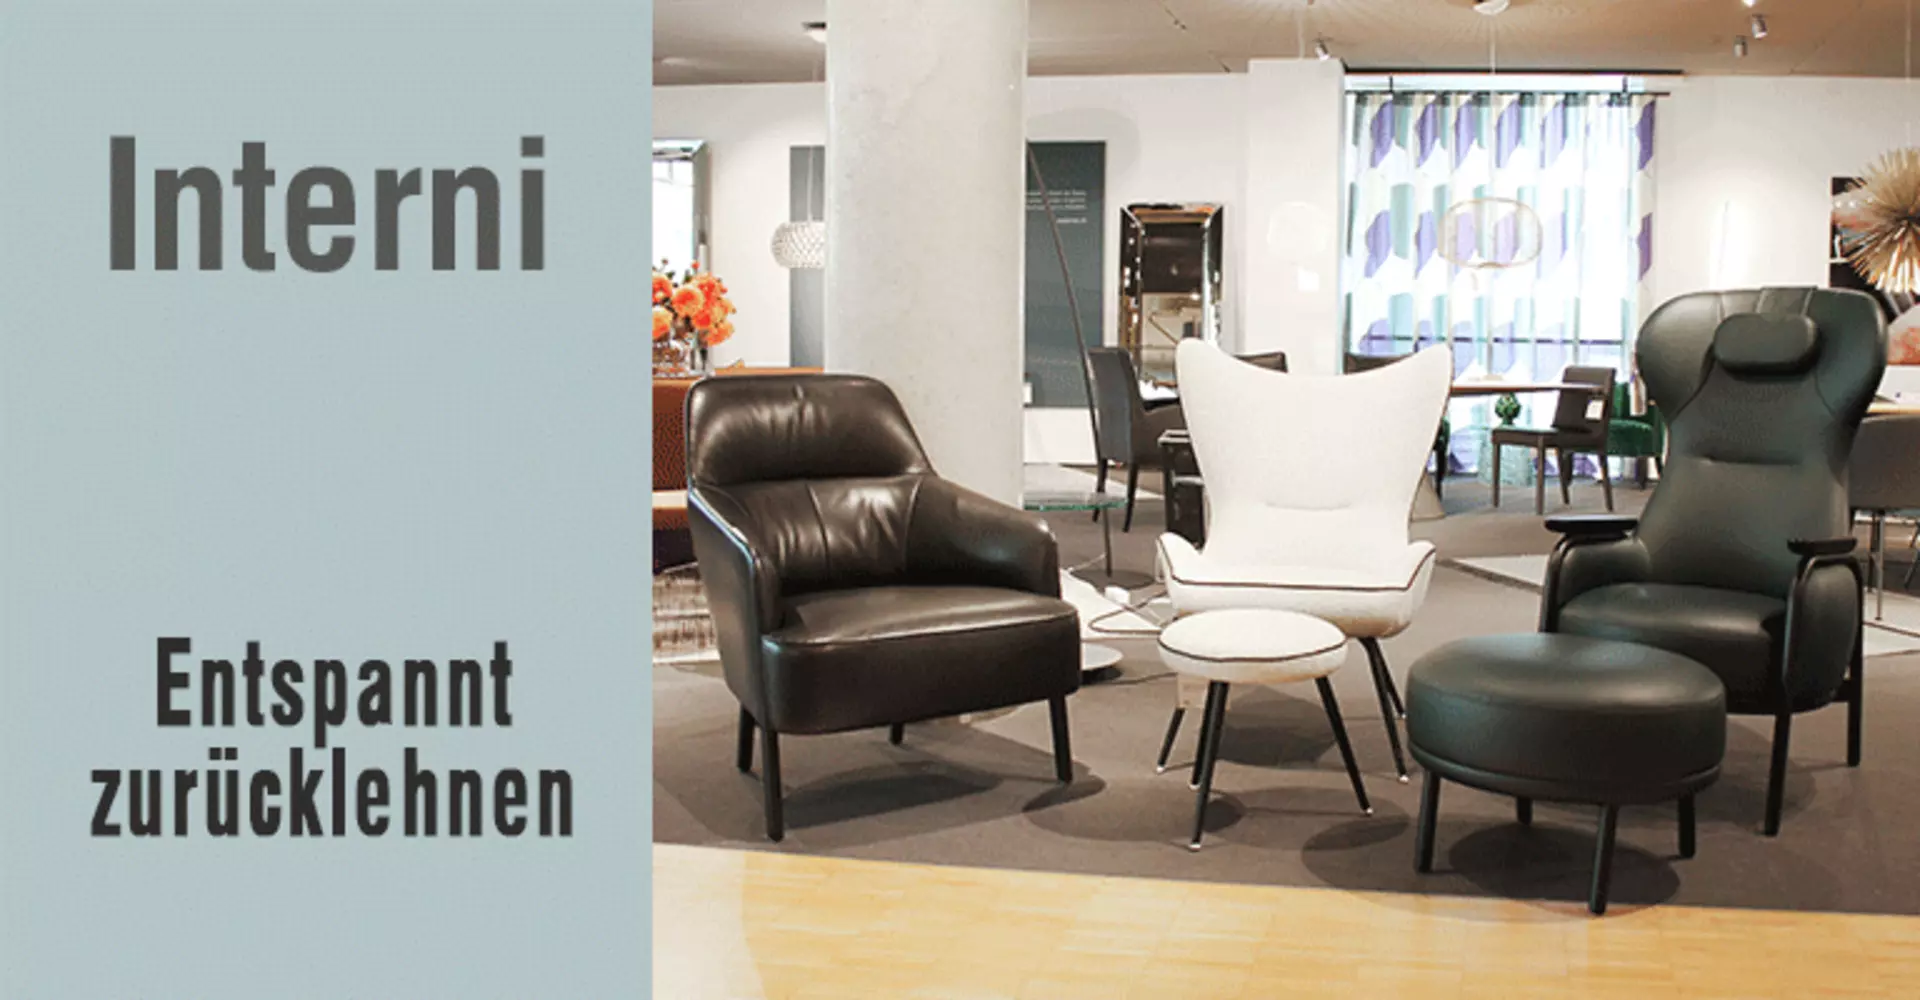 Entspannt zurücklehnen - komfortable Sitzgelegenheiten in edlen Designs bei interni by inhofer